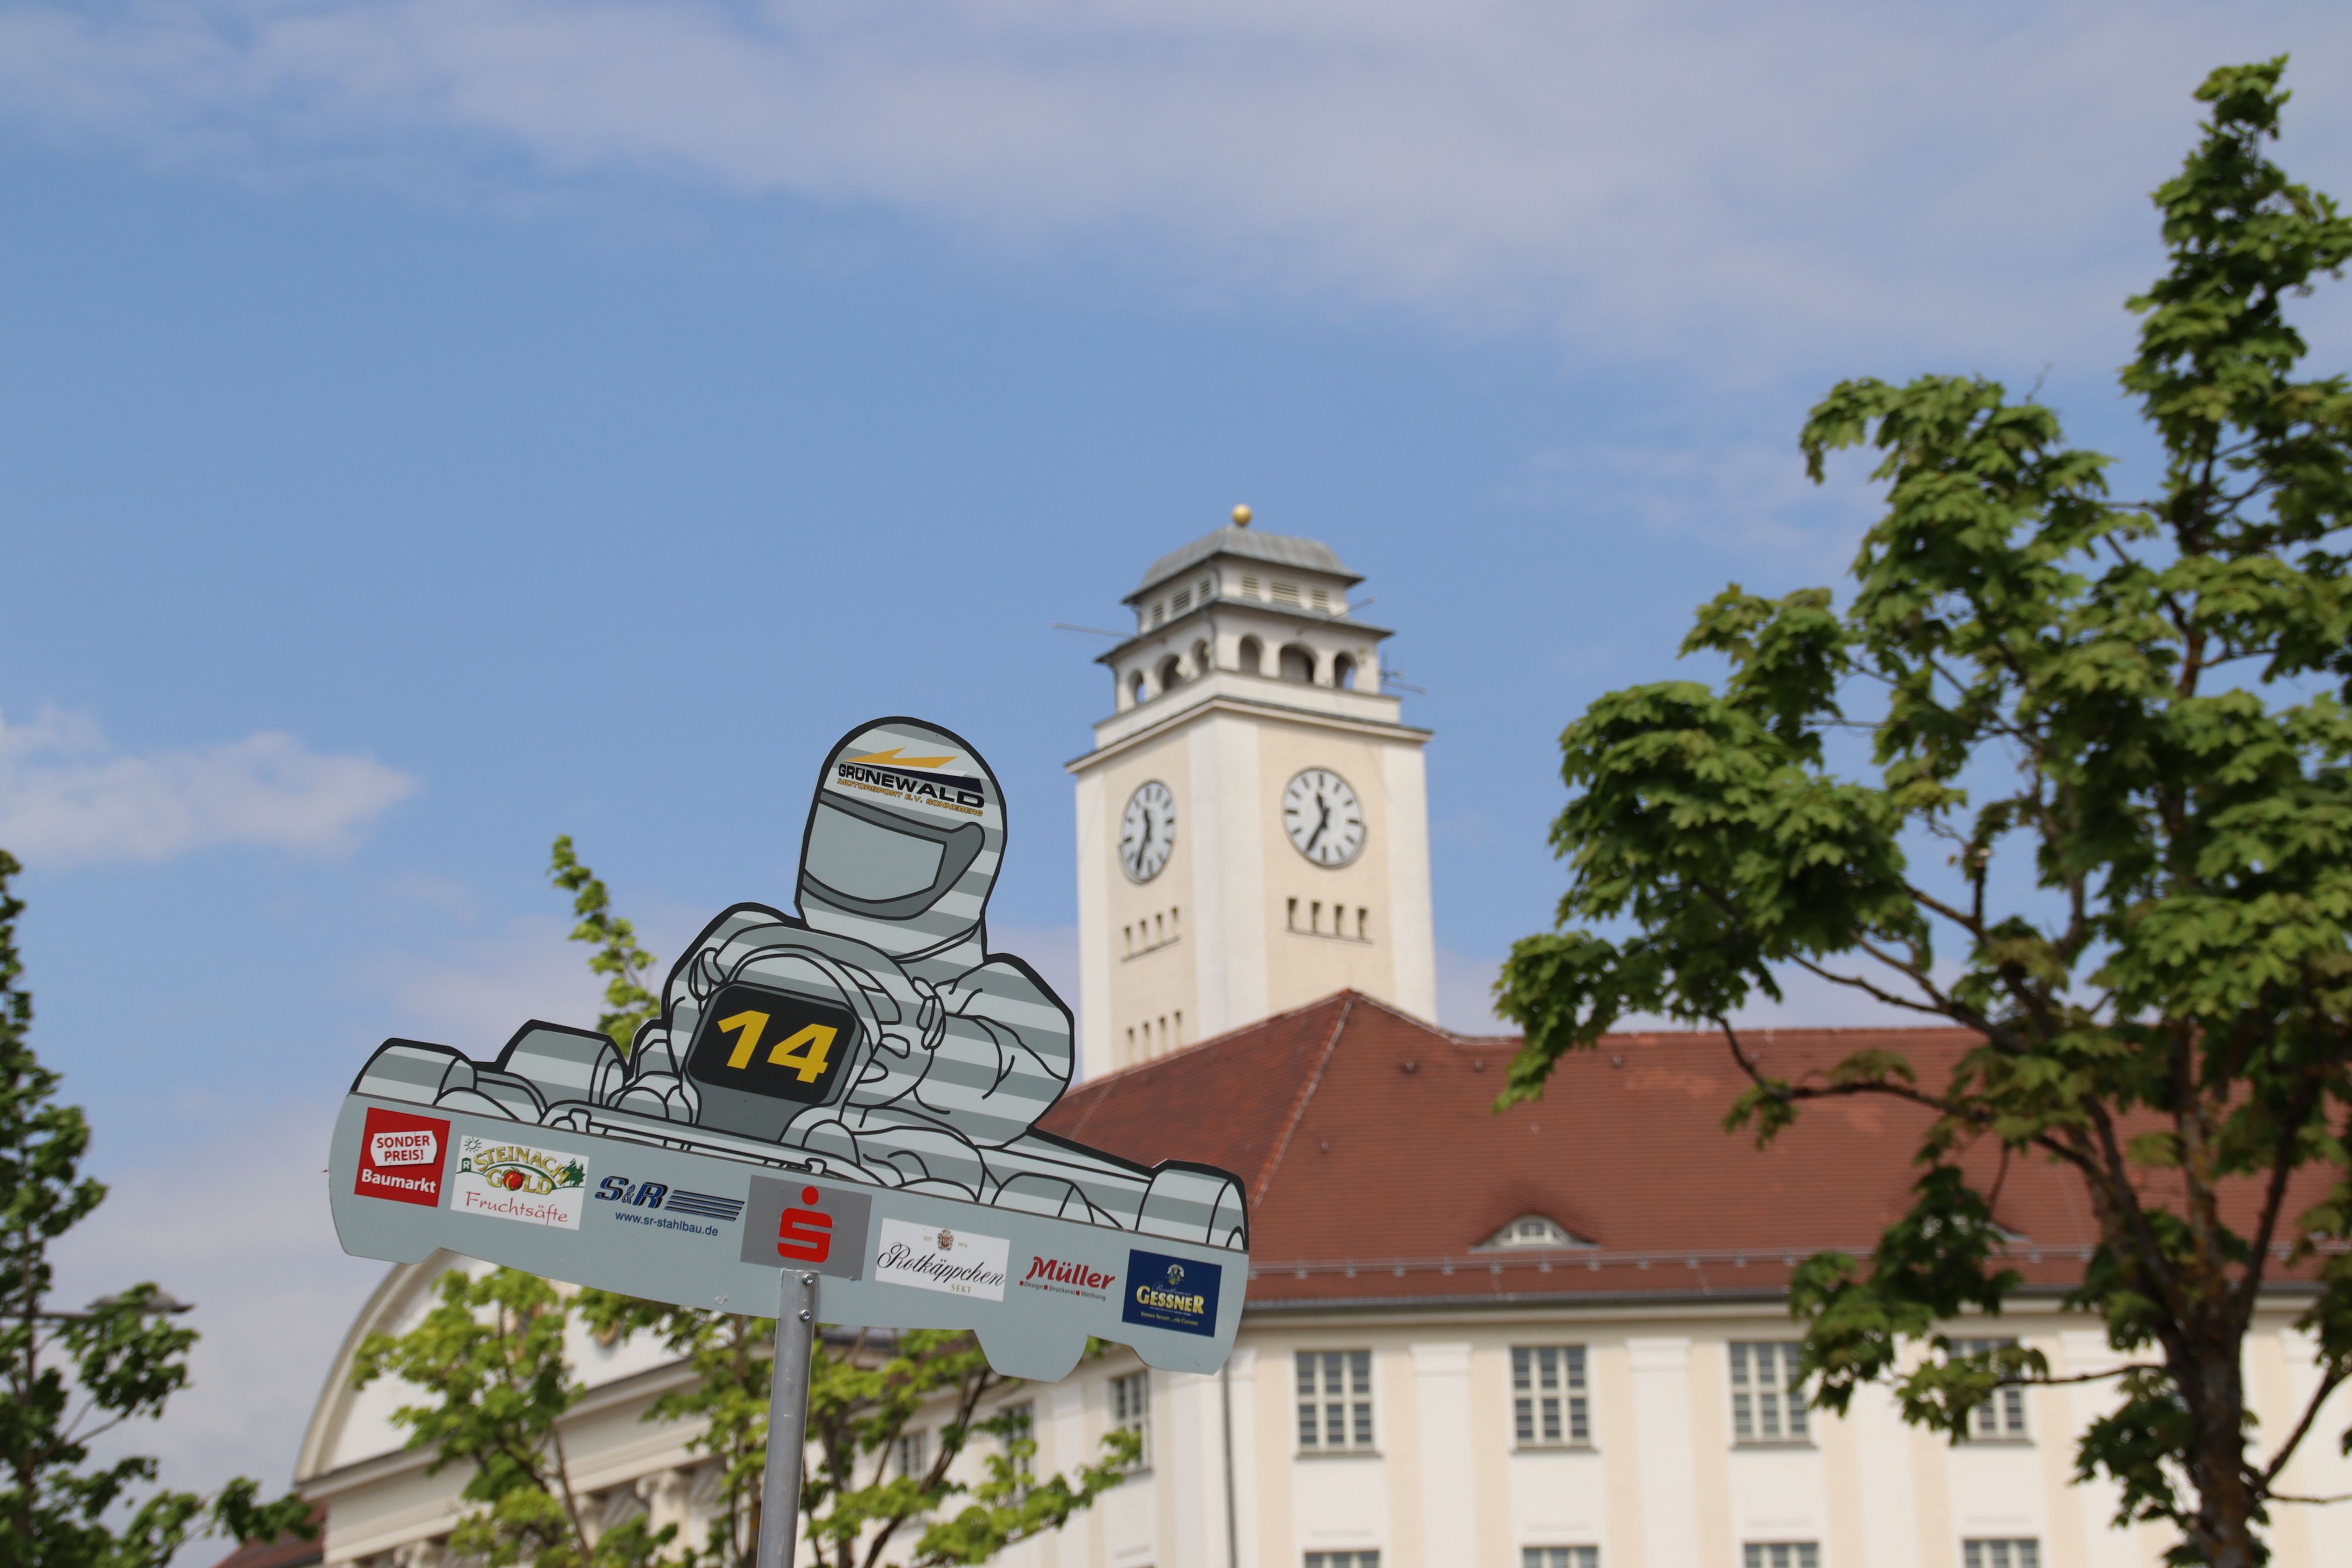 Im Vordergrund ist ein Schild, welches einen Rennfahrer abbildet. Dahinter sieht man das Rathaus der Stadt Sonneberg.